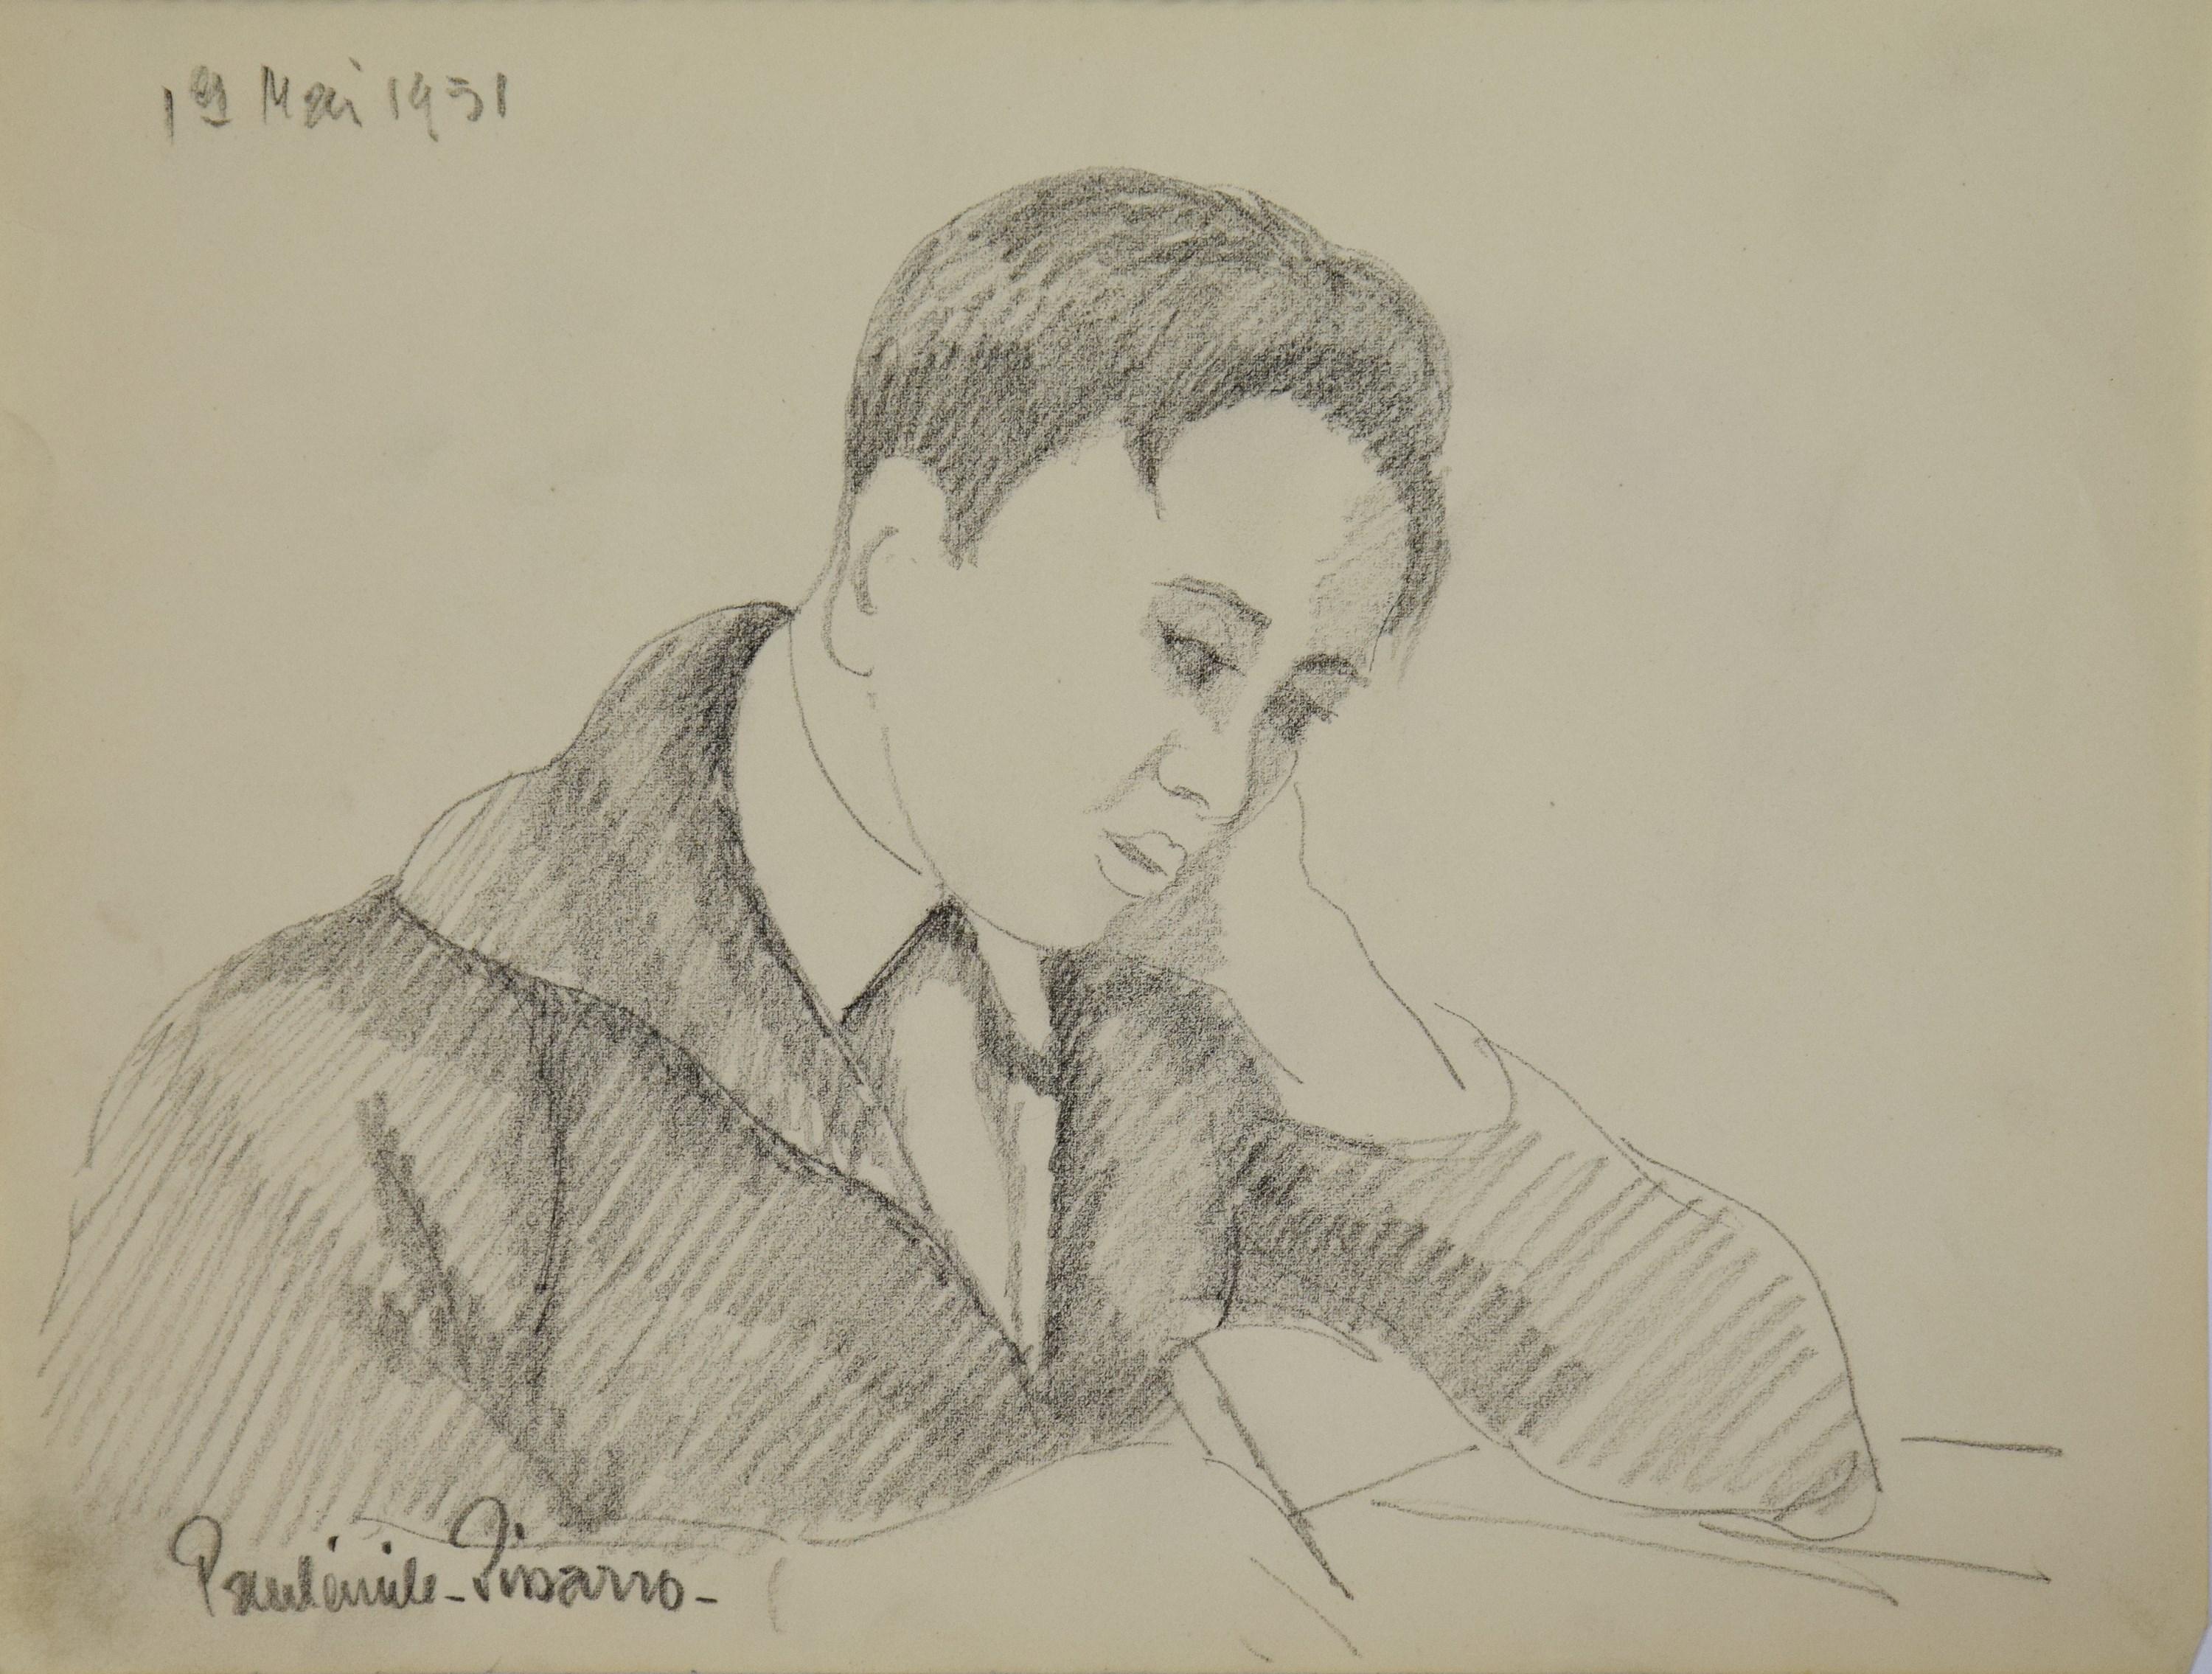 Les Devoirs von Paulmile Pissarro, 1951 – Art von Paulémile Pissarro